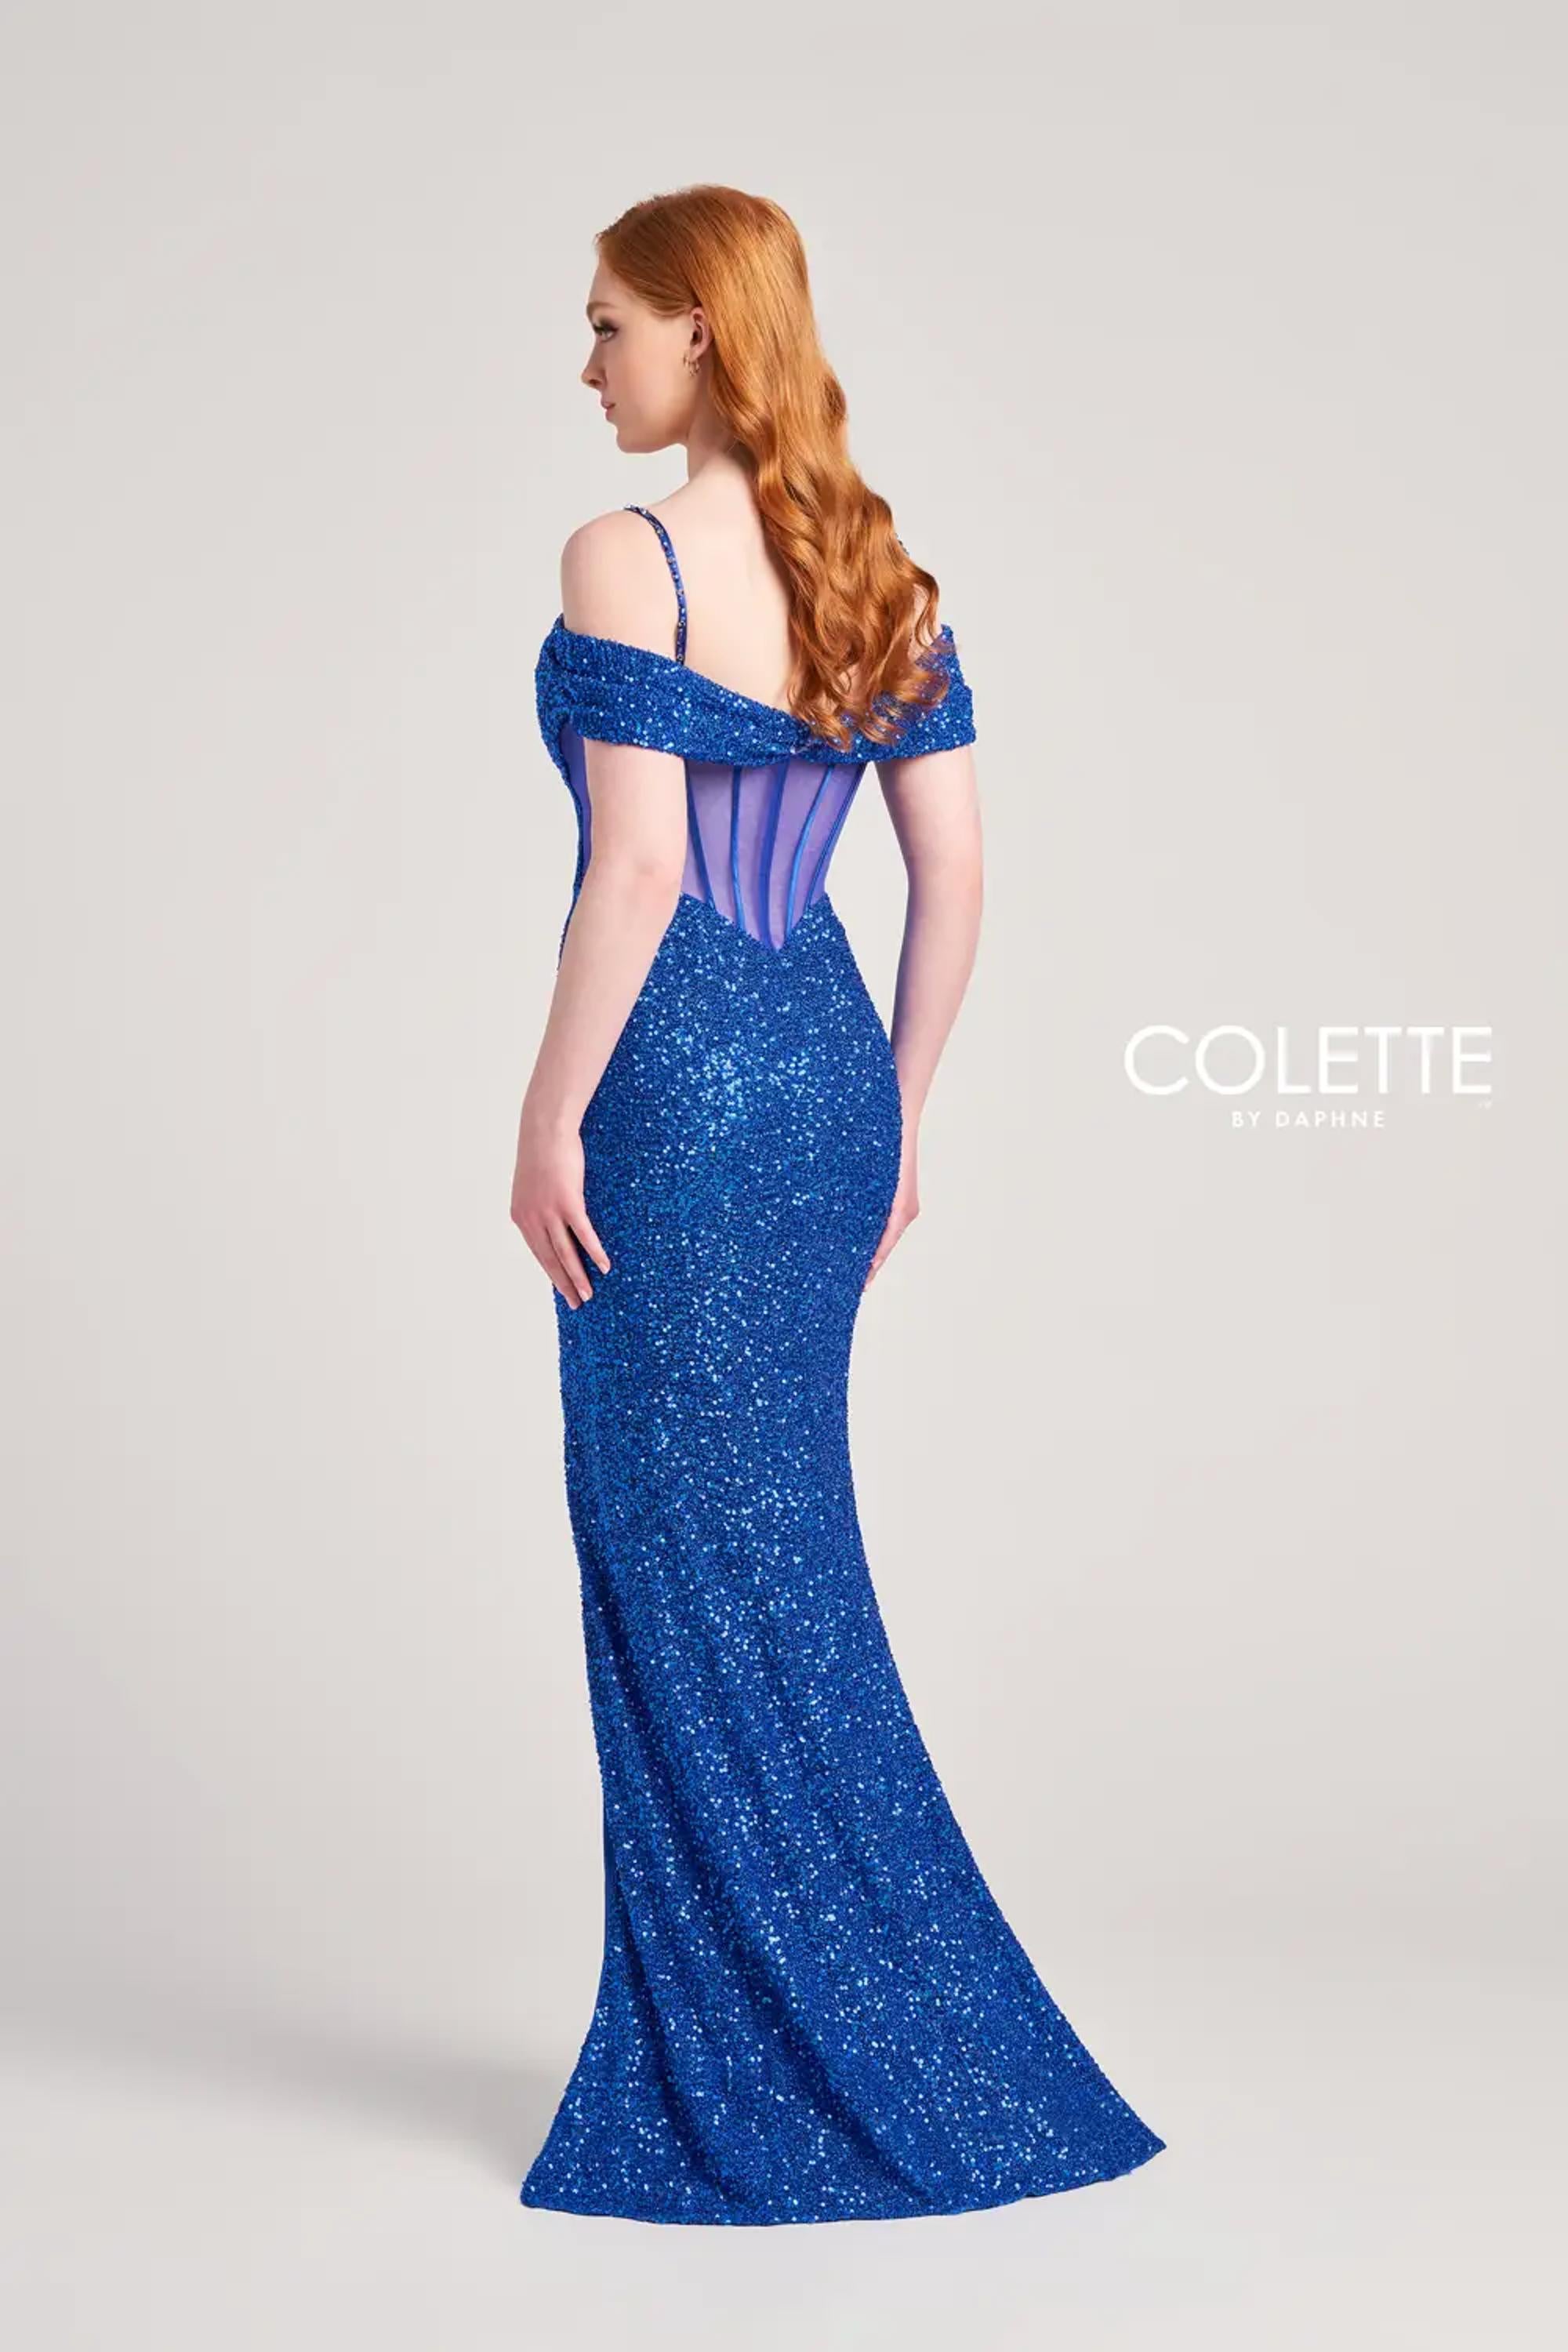 Colette CL5160